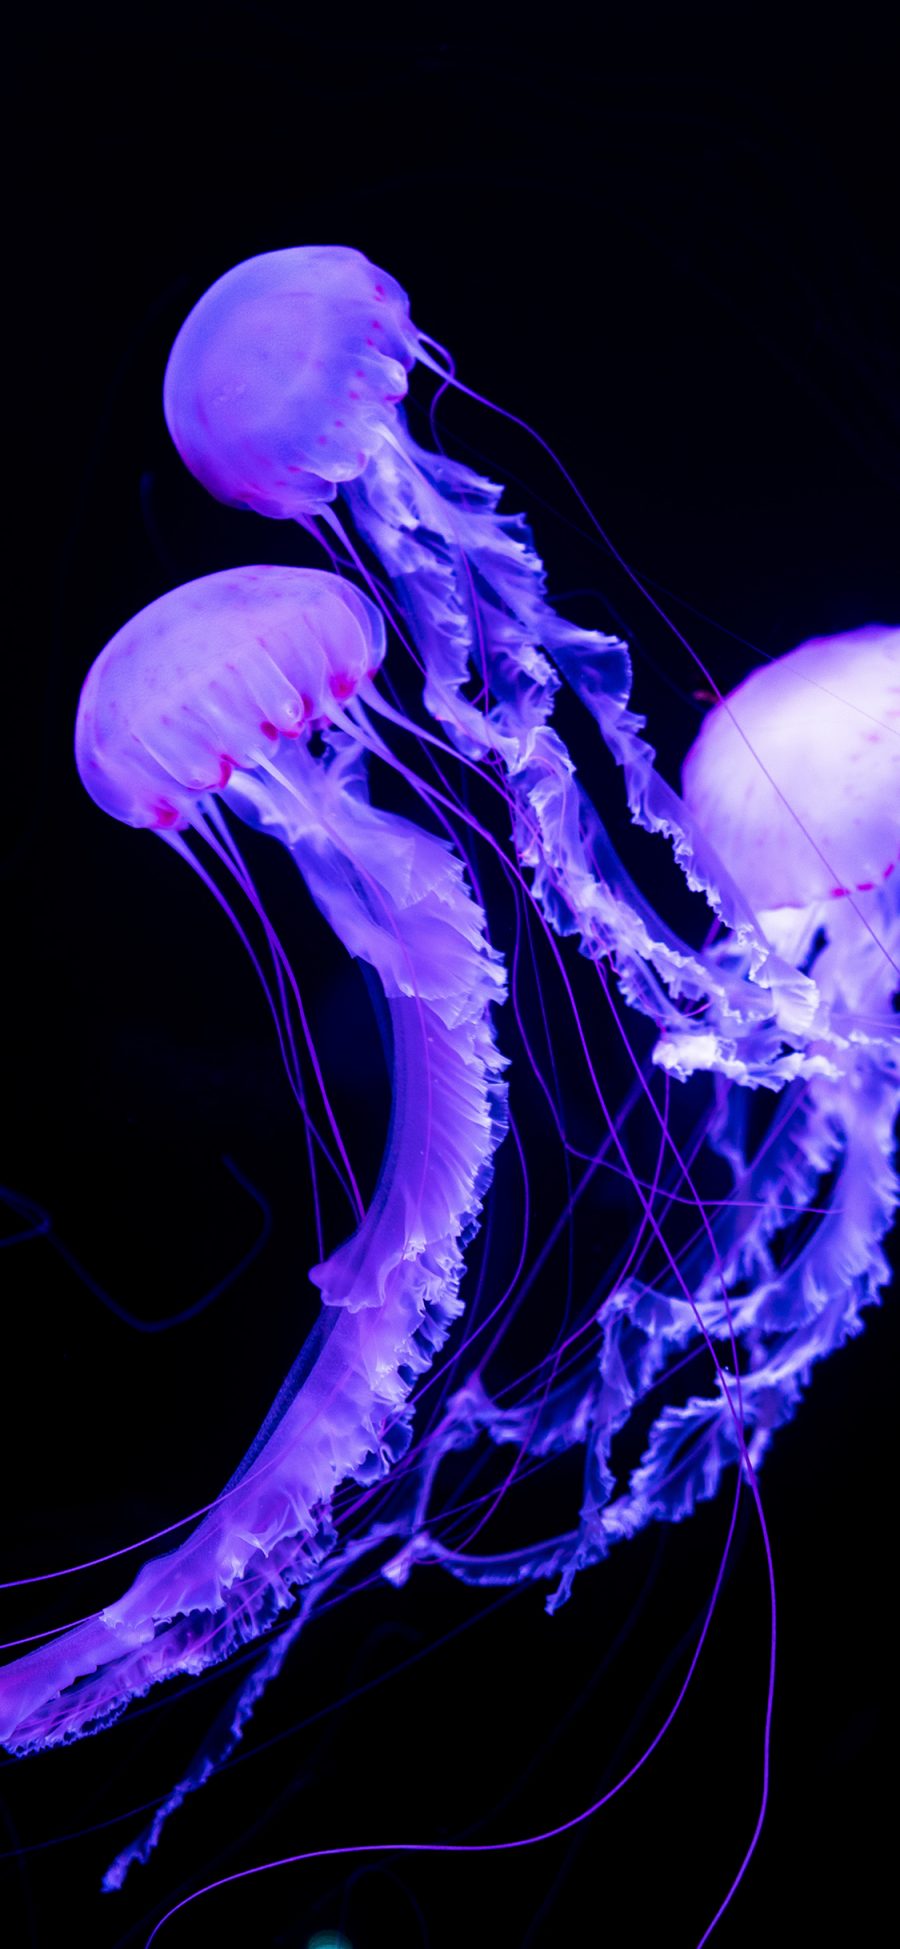 [2436×1125]水母 浮游 海洋生物 荧光 苹果手机壁纸图片